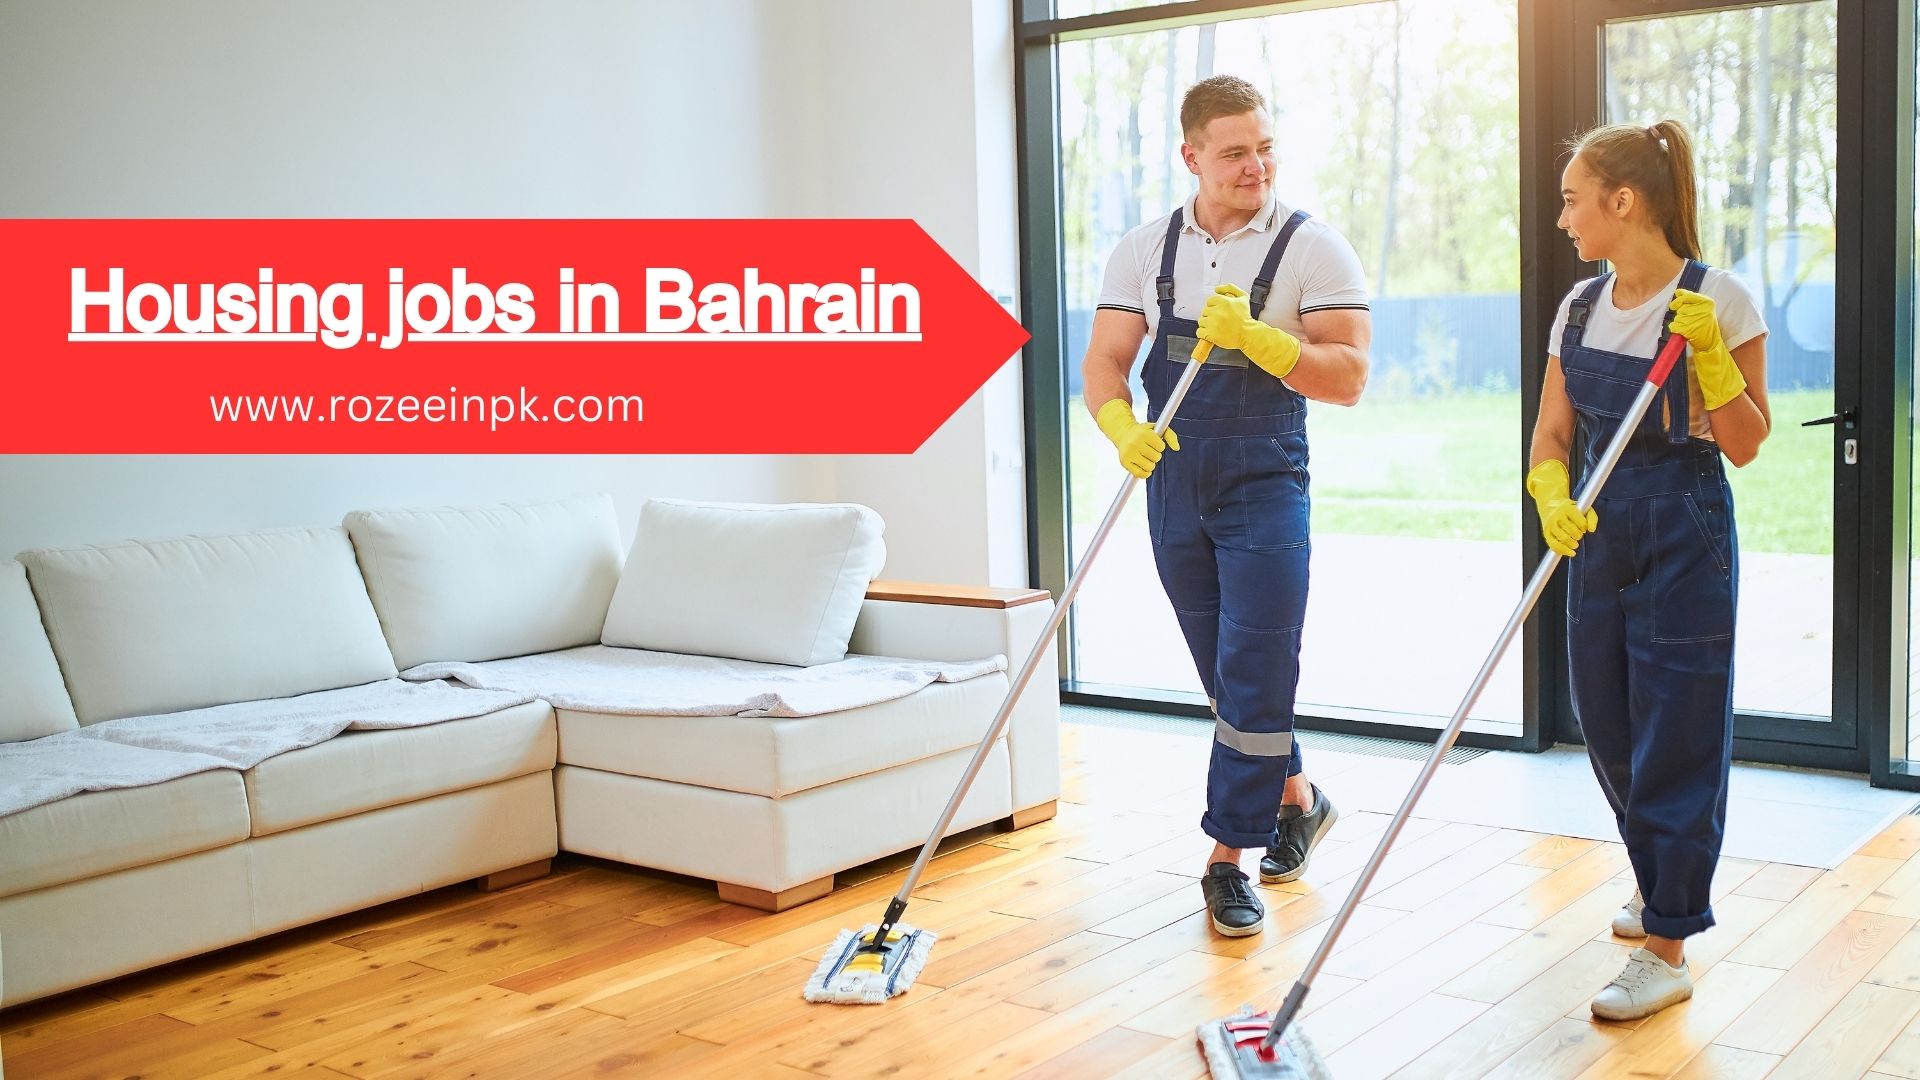 Housing jobs in Bahrain